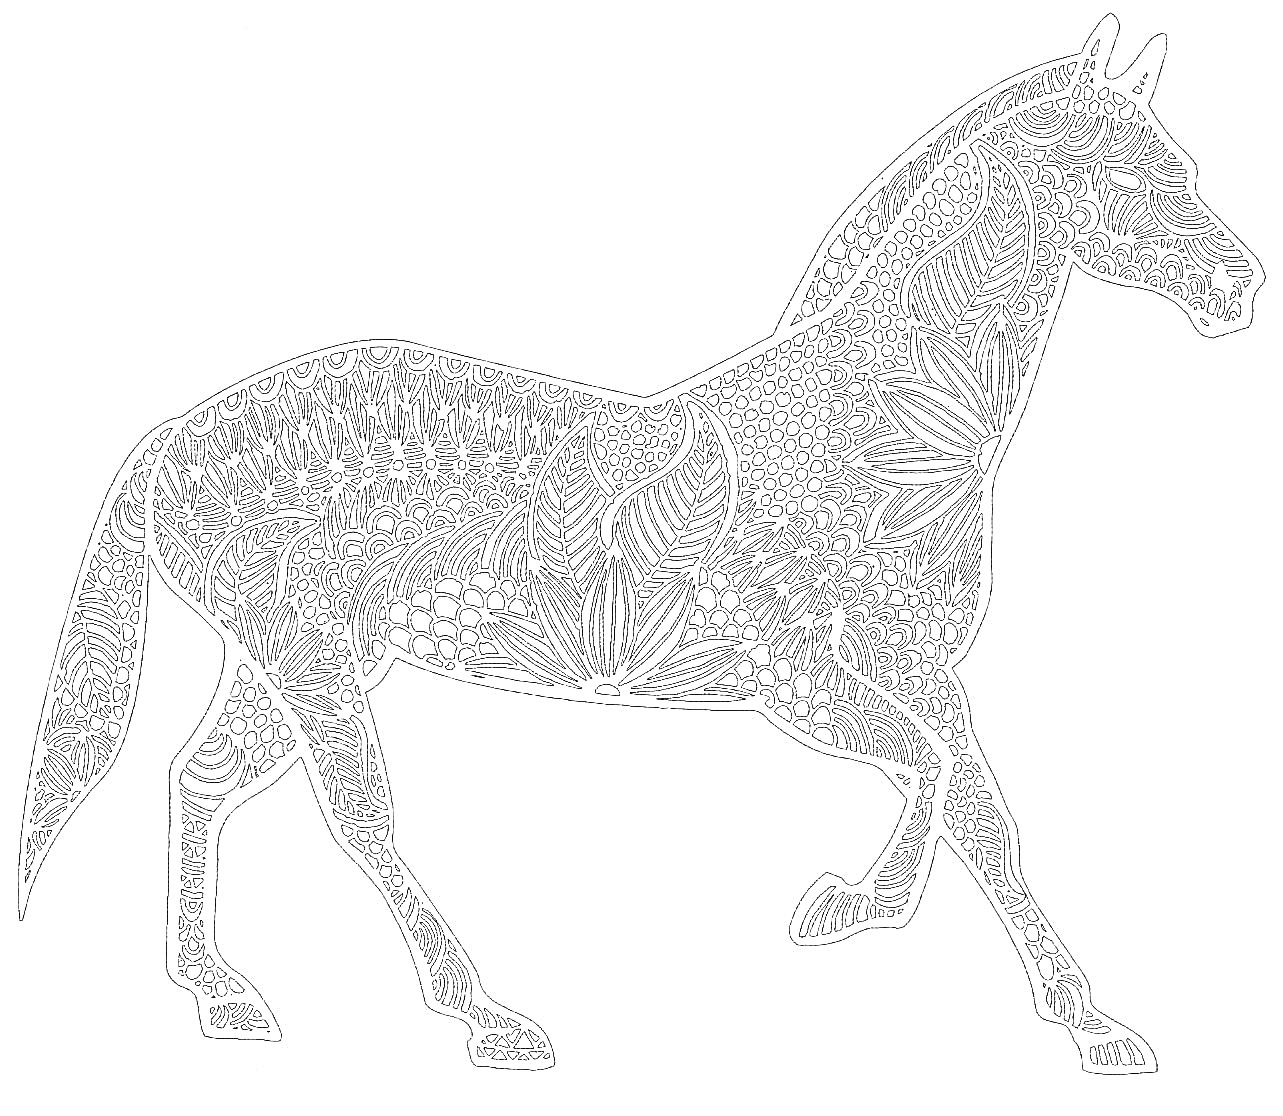 Антистресс раскраска с лошадью, покрытая сложным растительным орнаментом